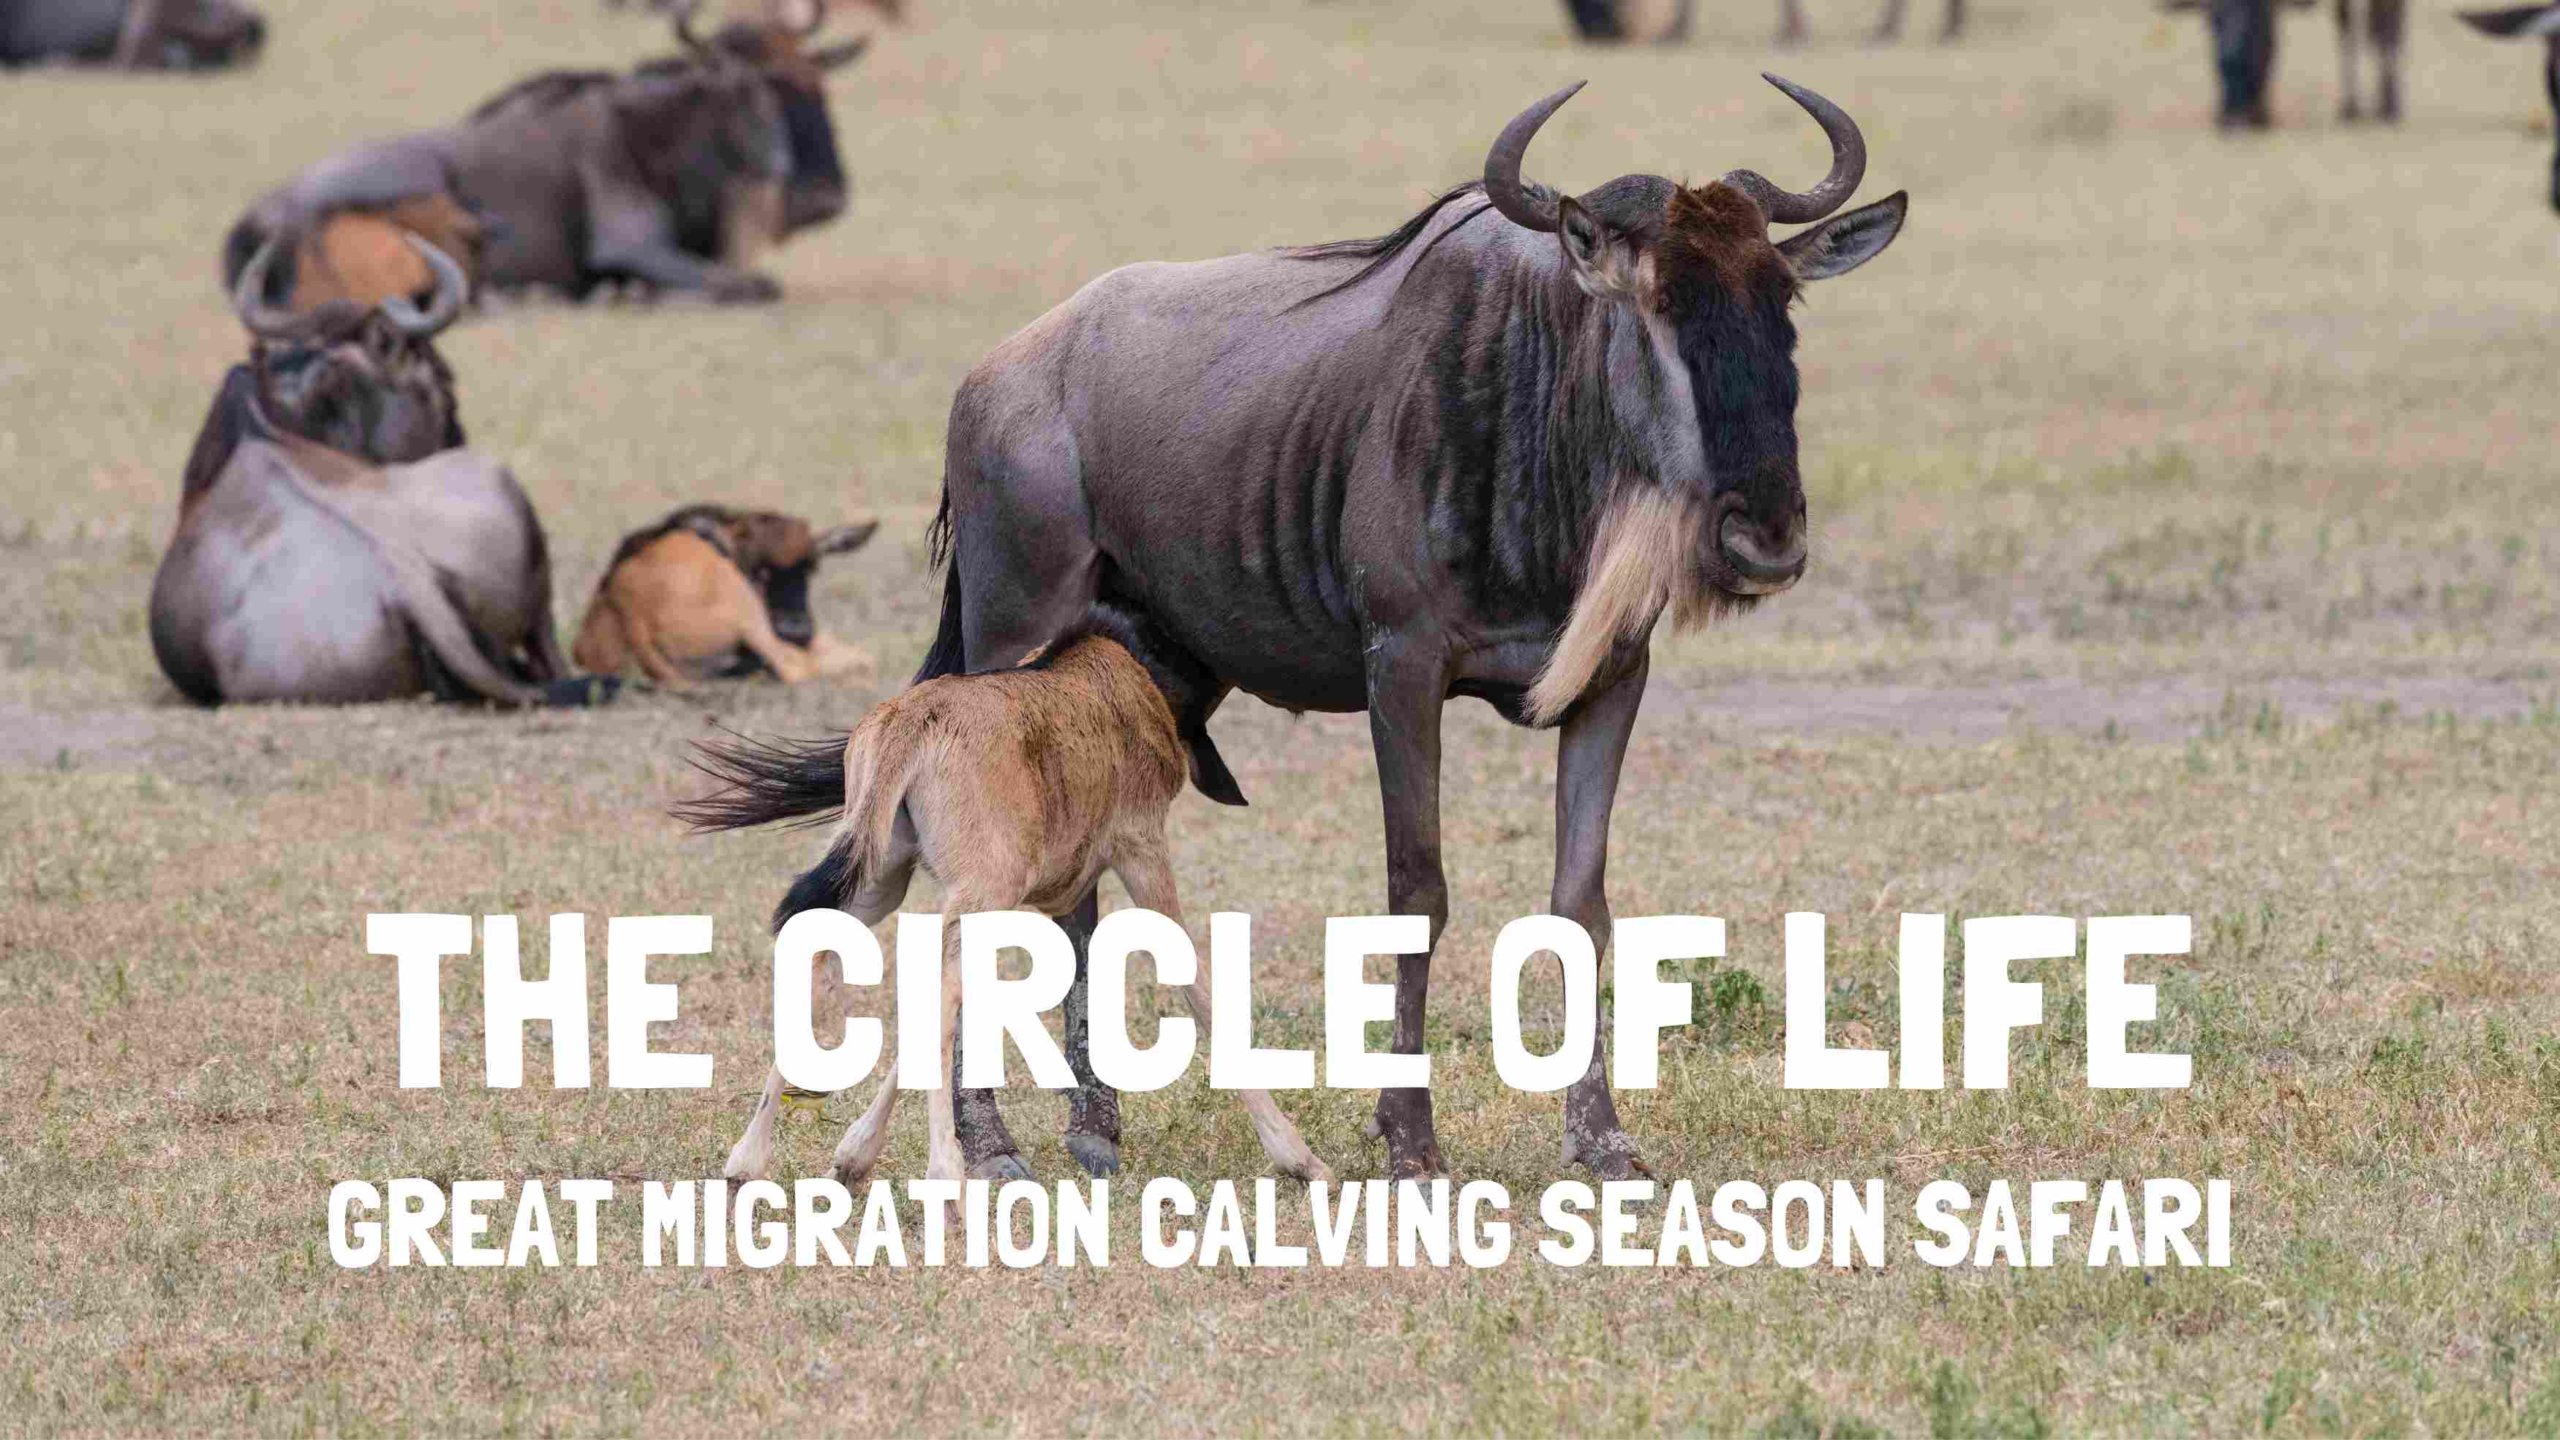 great migration calving season safari serengeti tanzania